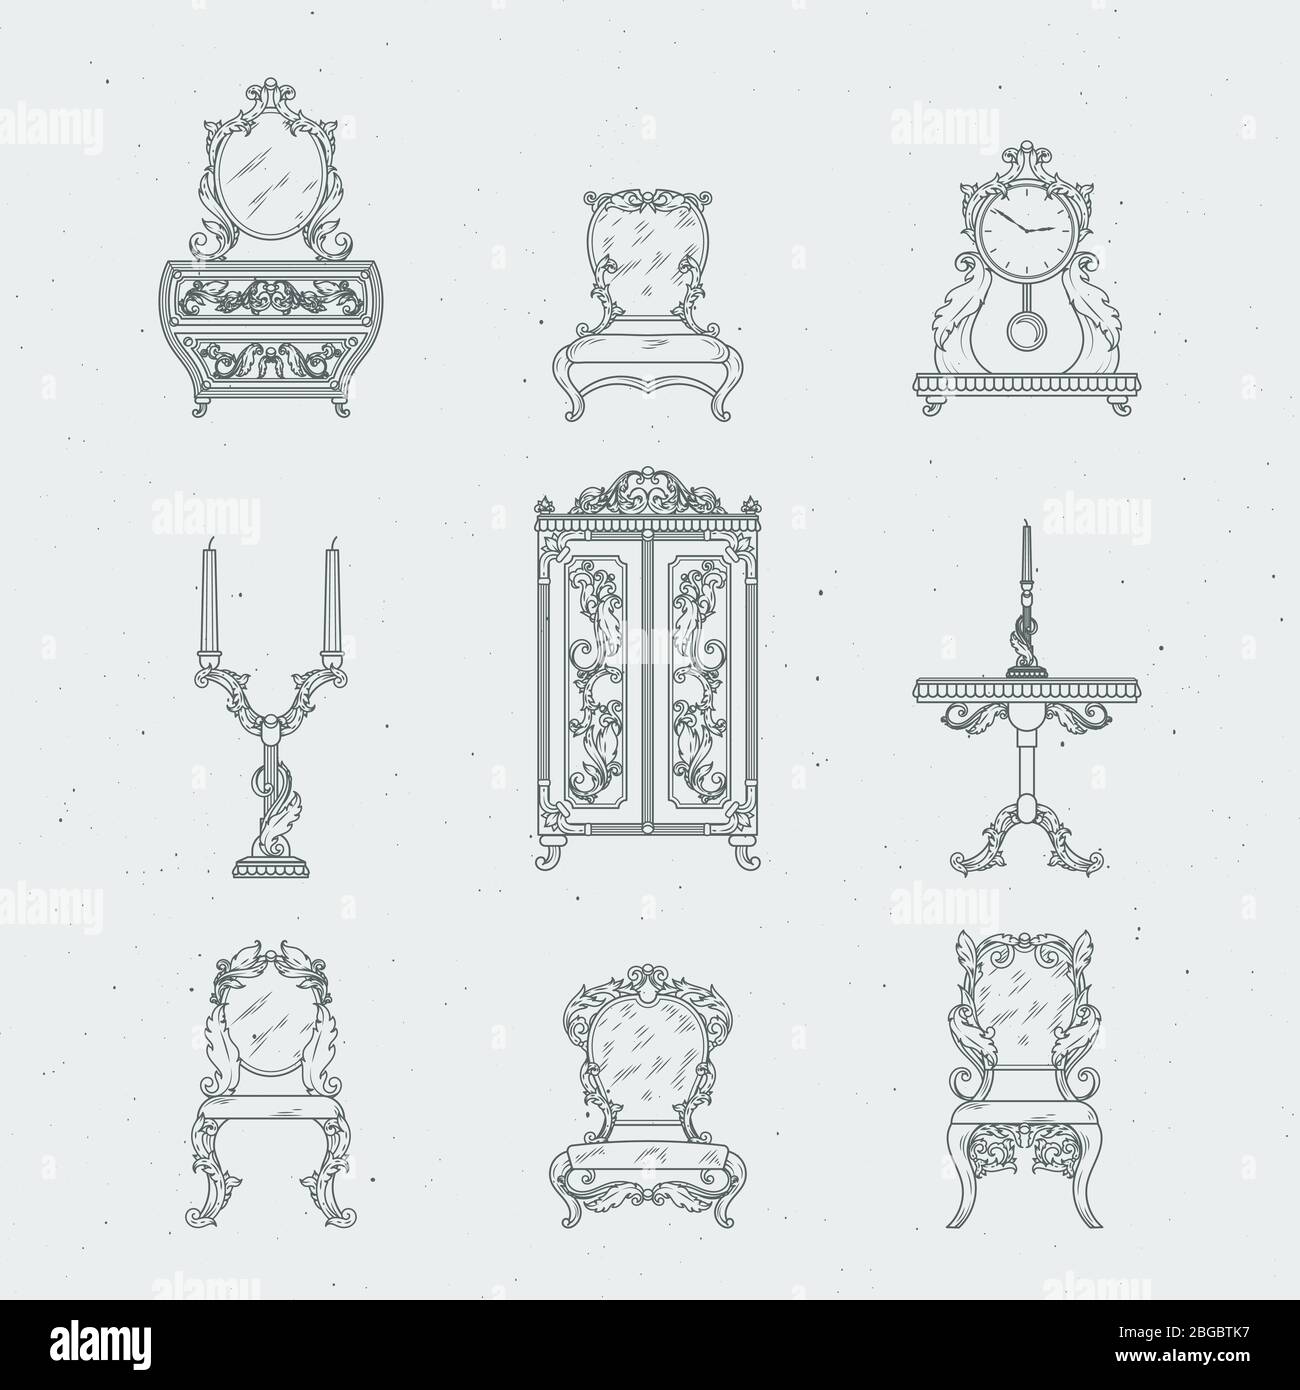 Maison meubles anciens chaises, commode, table de chevet, miroir. Illustrations vectorielles à dessin manuel de style baroque Illustration de Vecteur